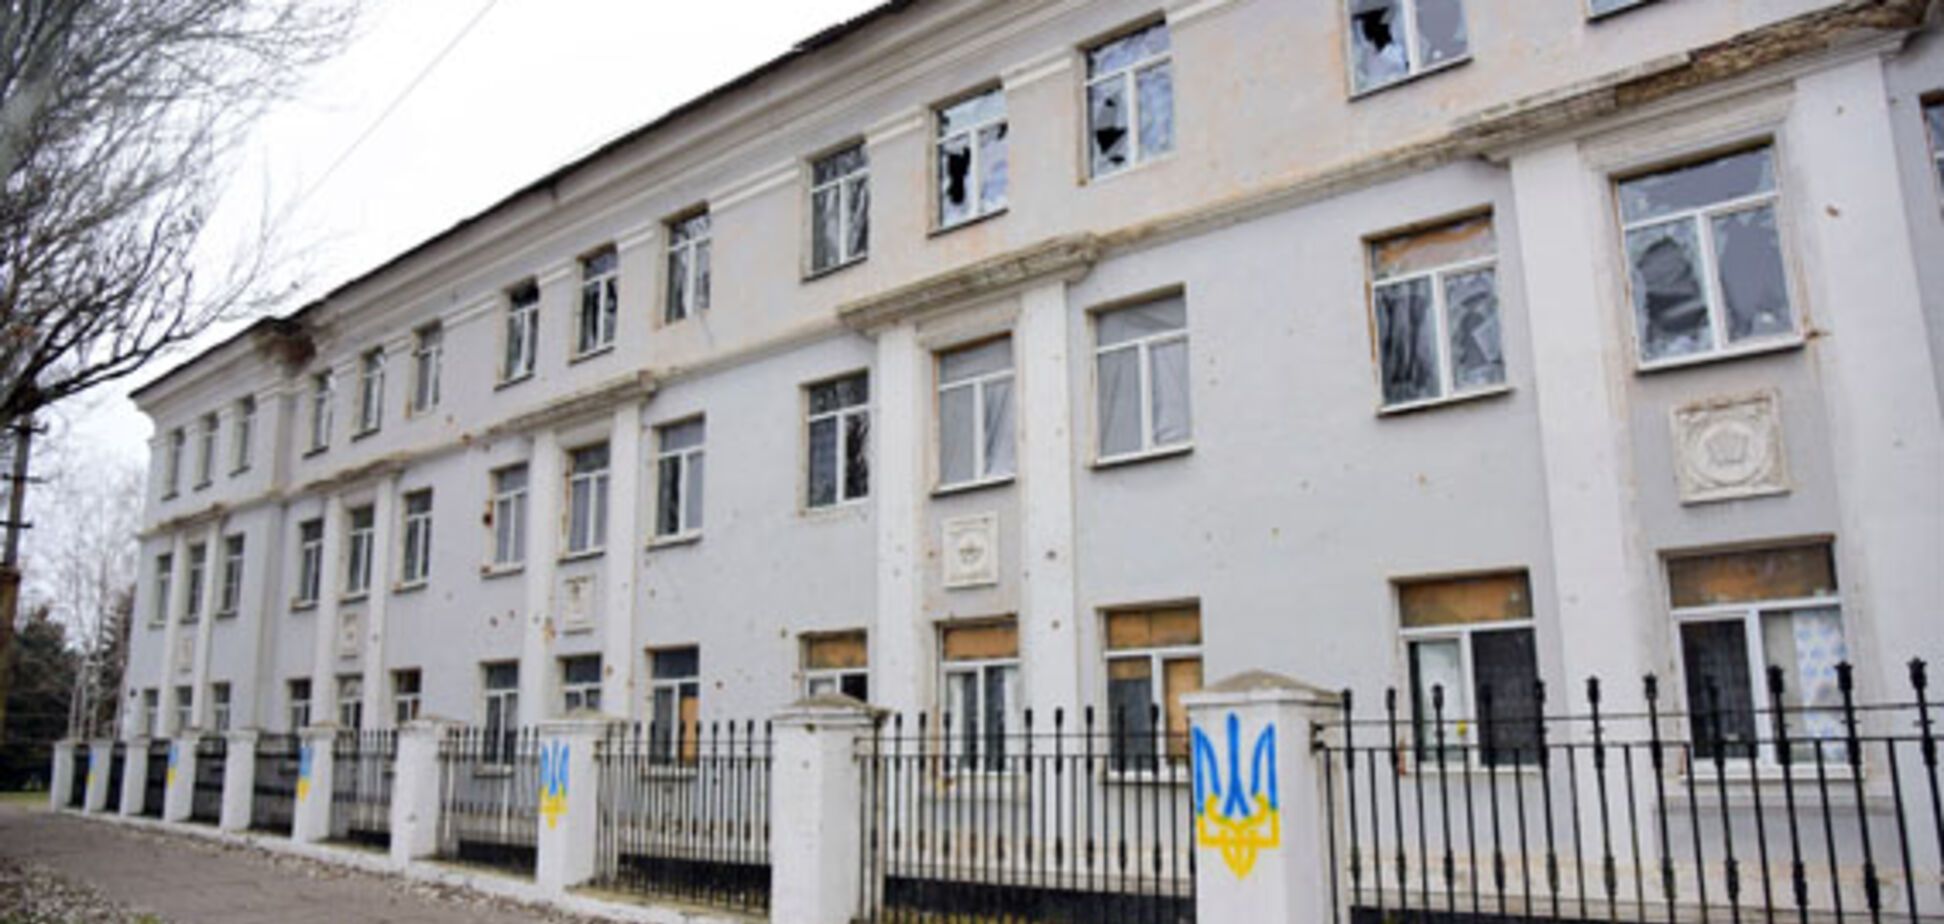  'Негодяй забрал 1 млн': на Донбассе подрядчик сбежал с деньгами на ремонт школы